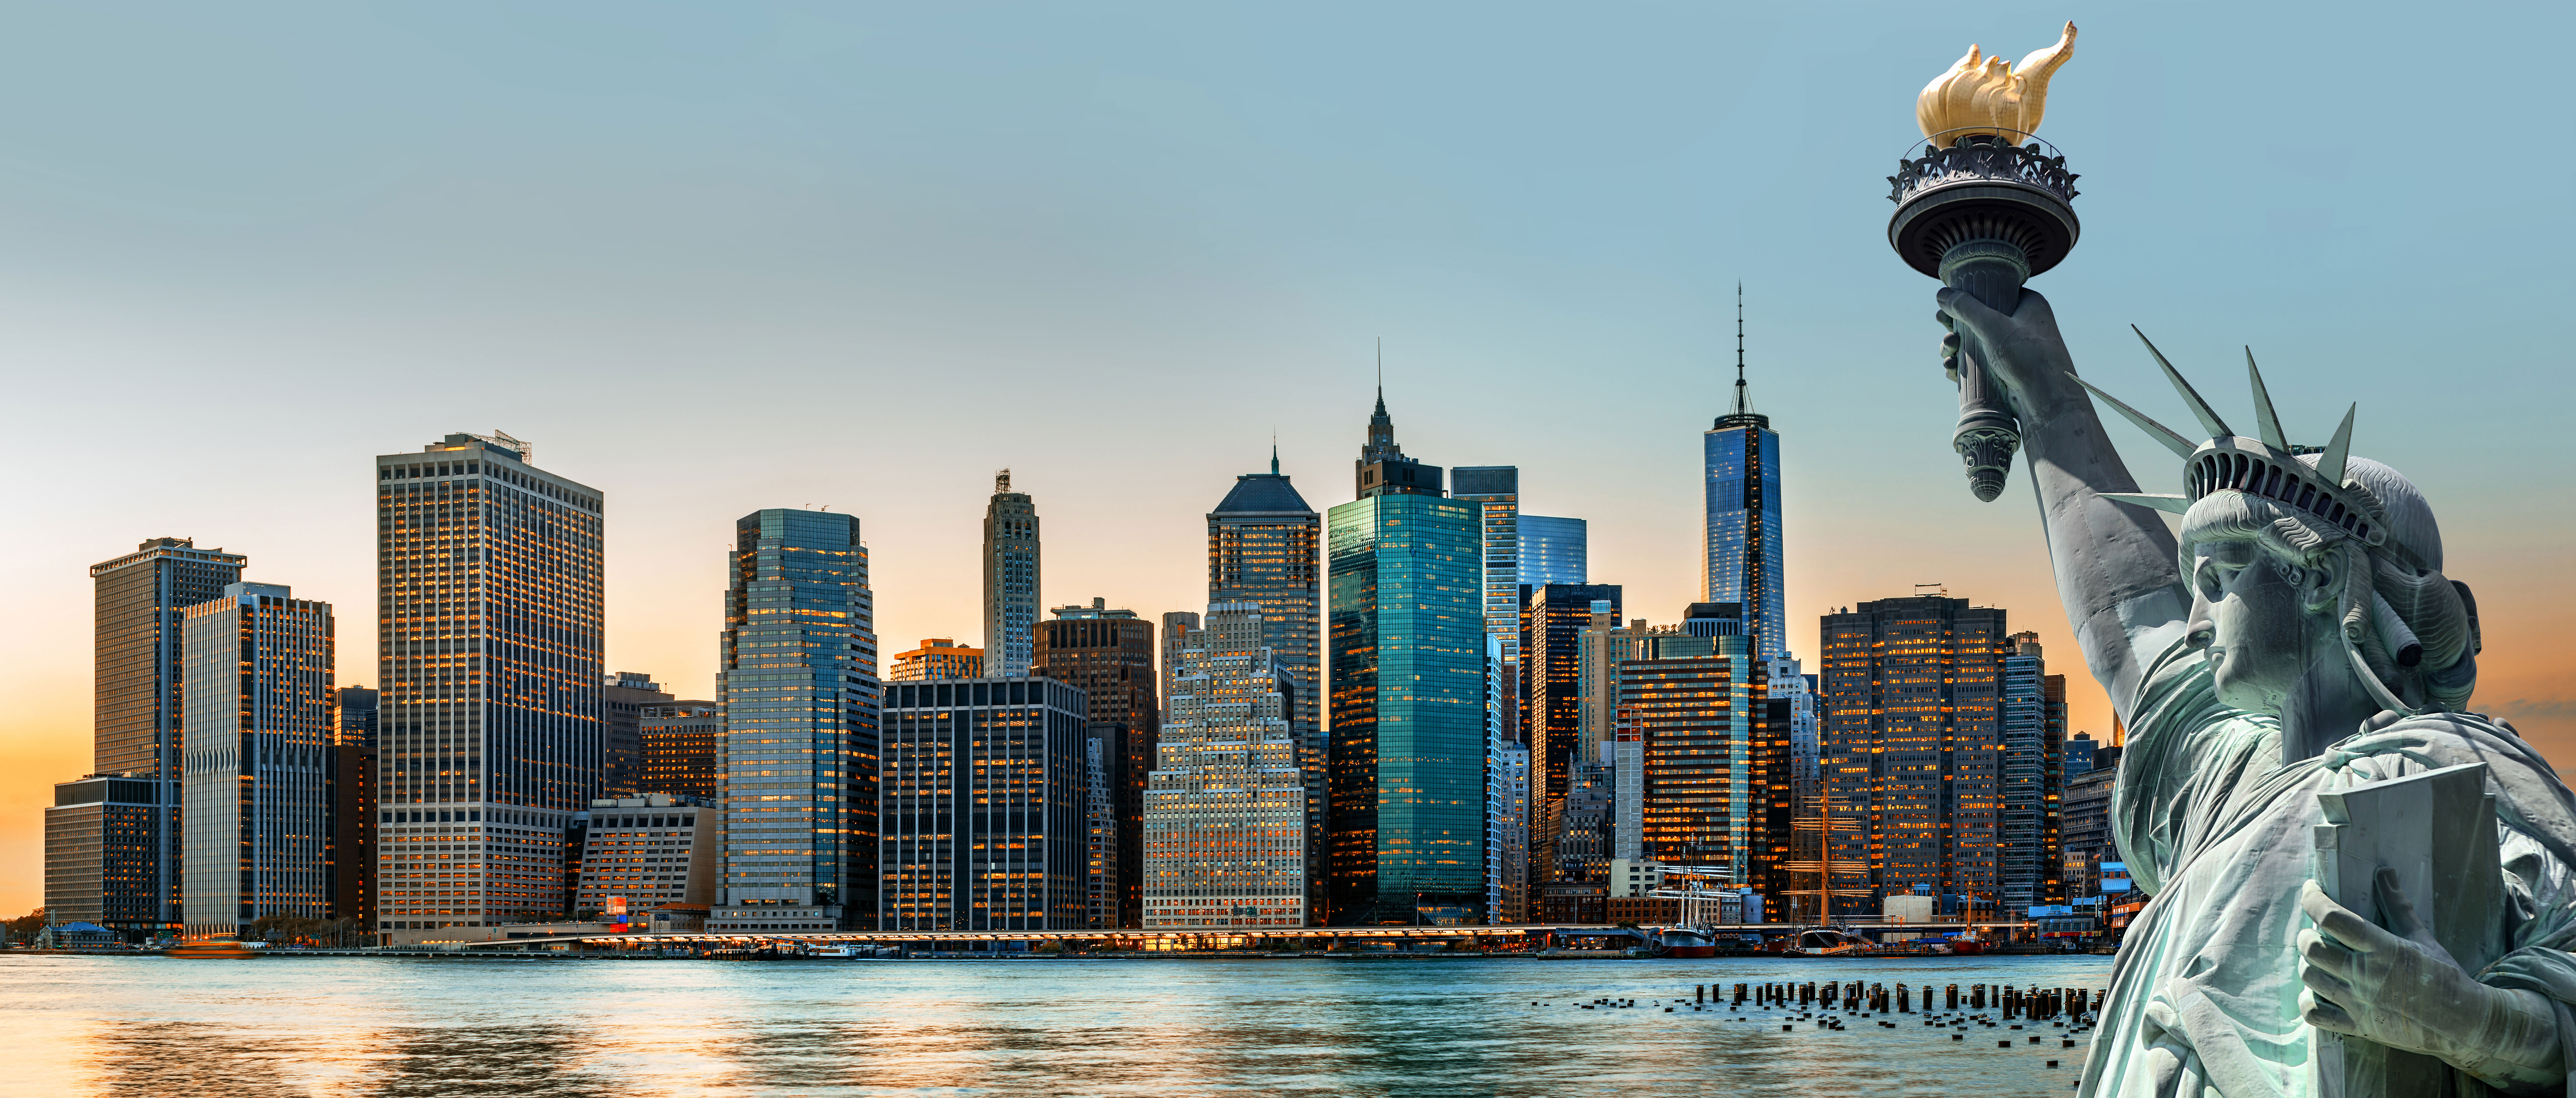 Статуя свободы на фоне Нью-Йорка, куда доступна иммиграция по Грин-карте